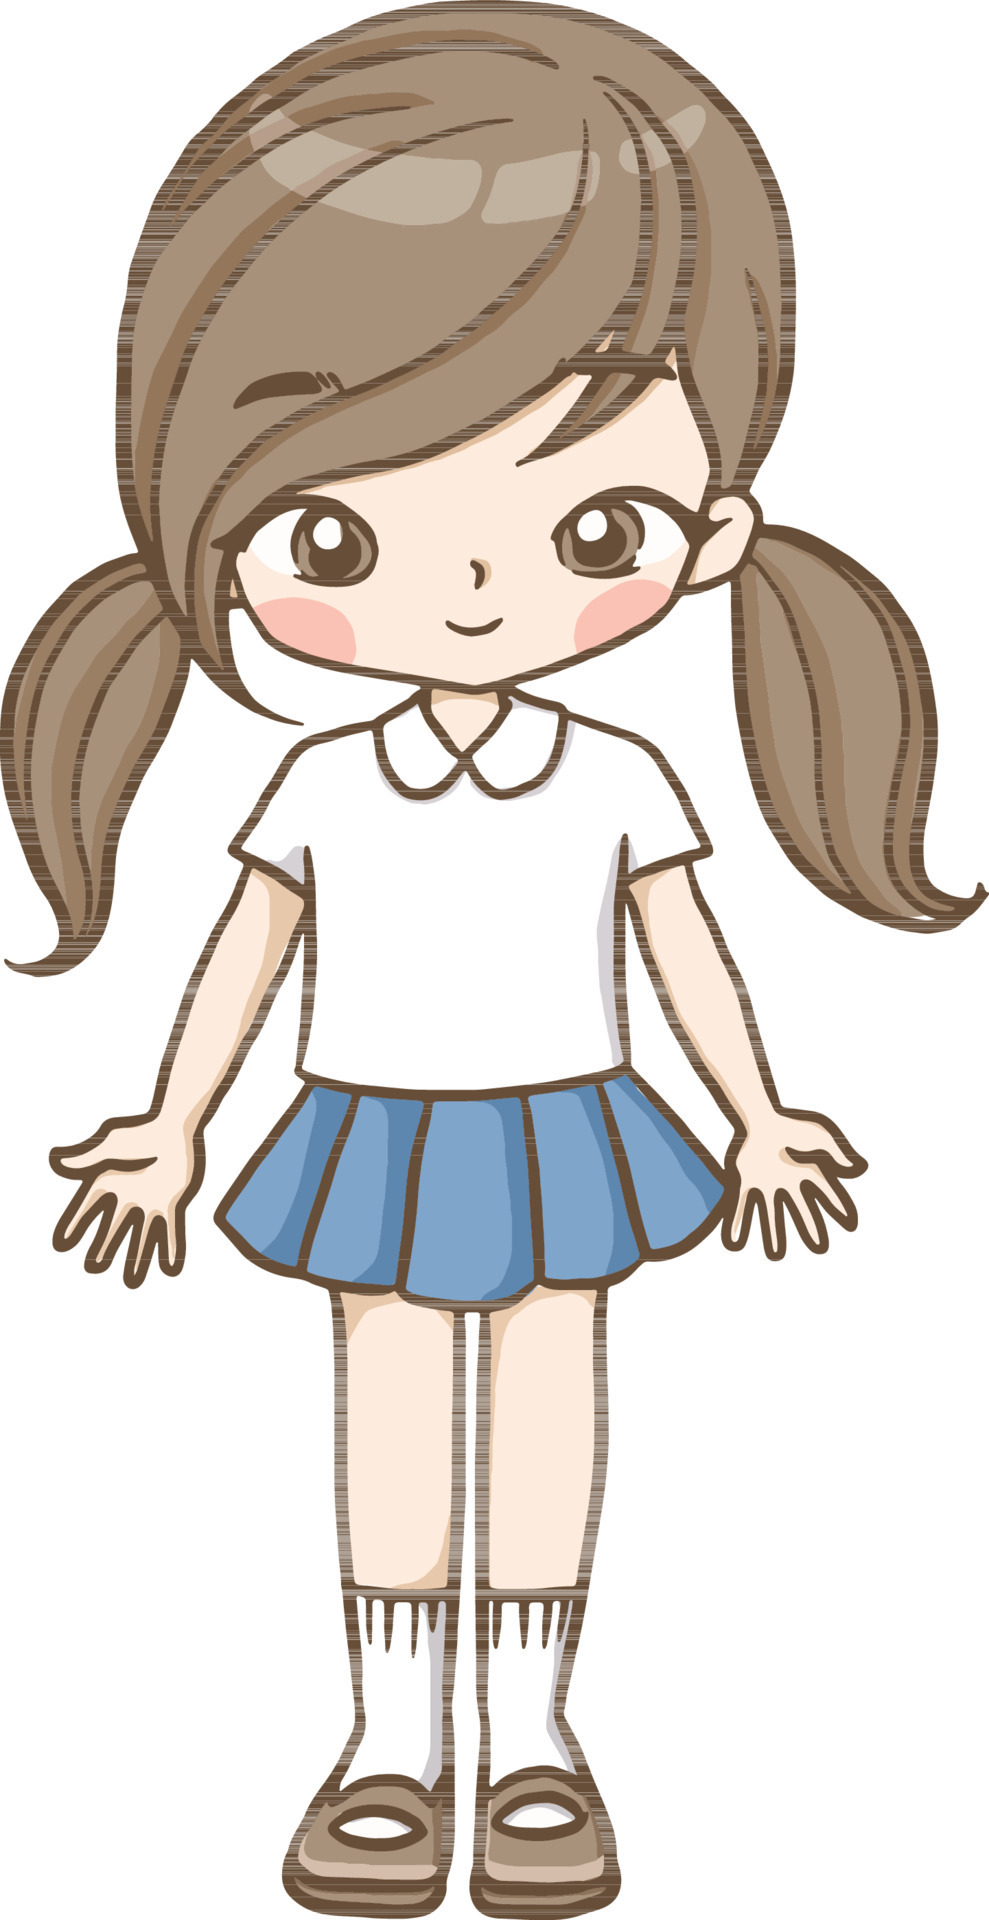 Uma pessoa fez para mim -3-  Kawaii drawings, Chibi drawings, Cute drawings